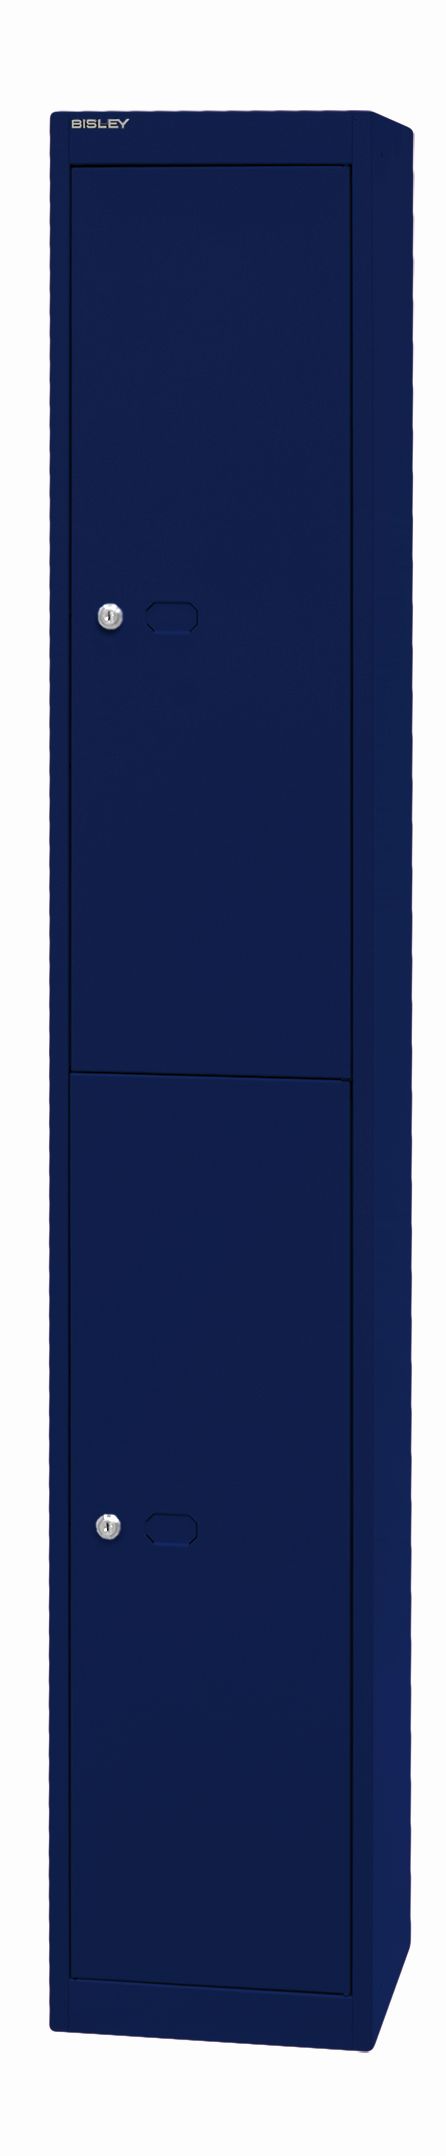 Bisley Garderobenschrank Office mit 1 Abteil und 2 Fächer - 305mm Tiefe